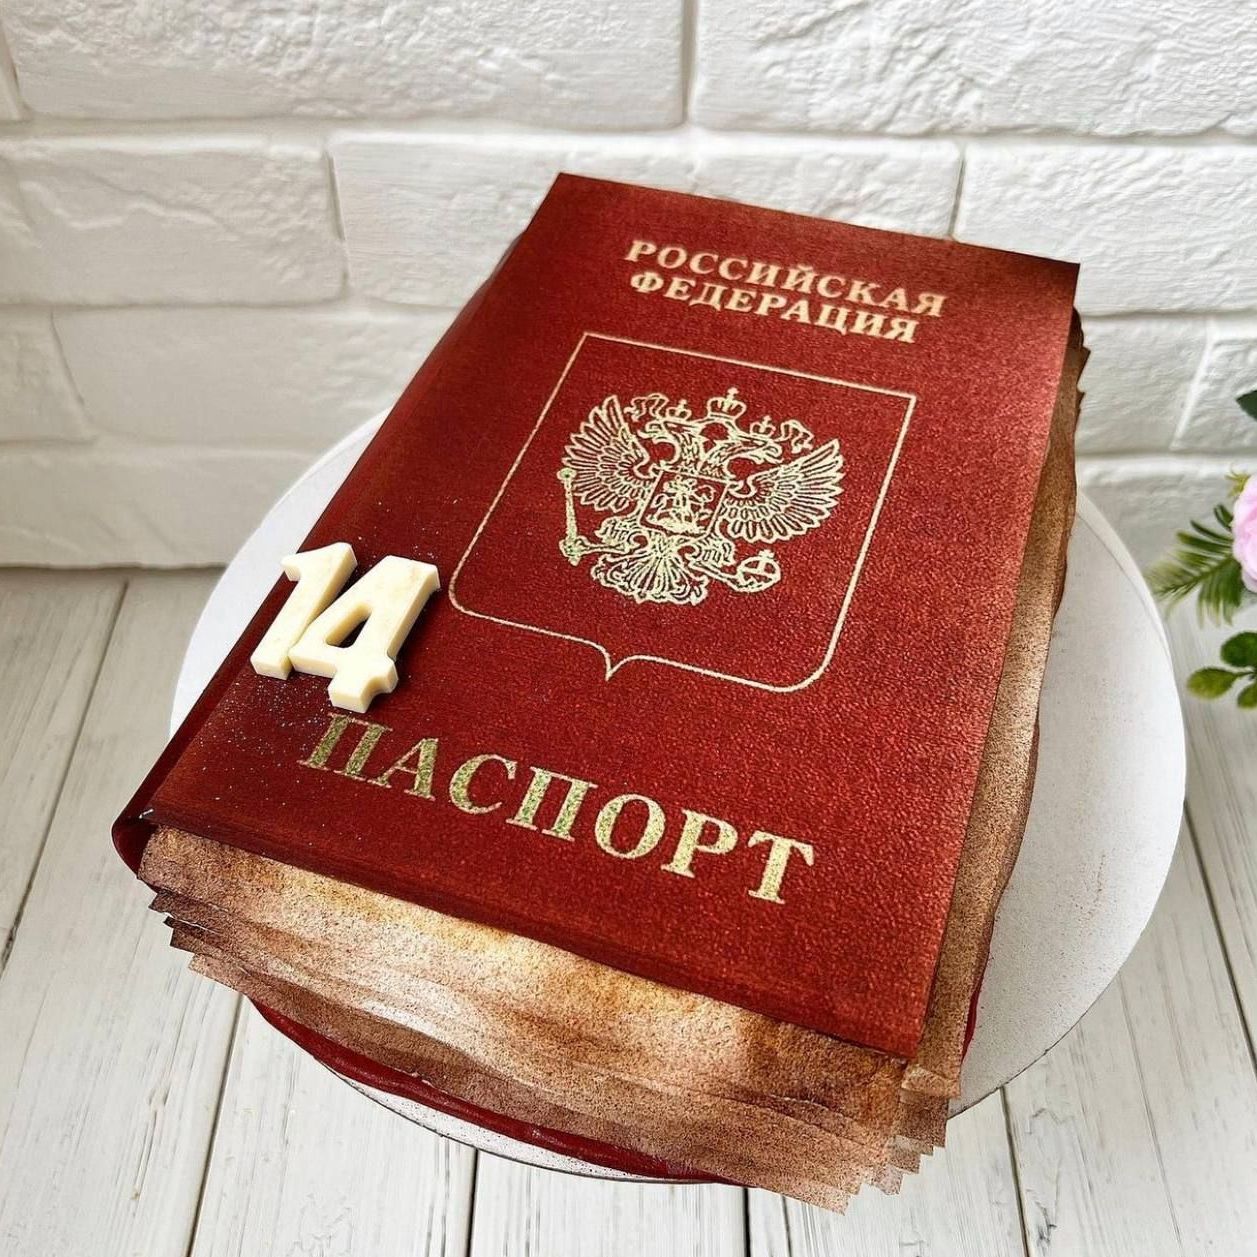 Торт паспорт коржи